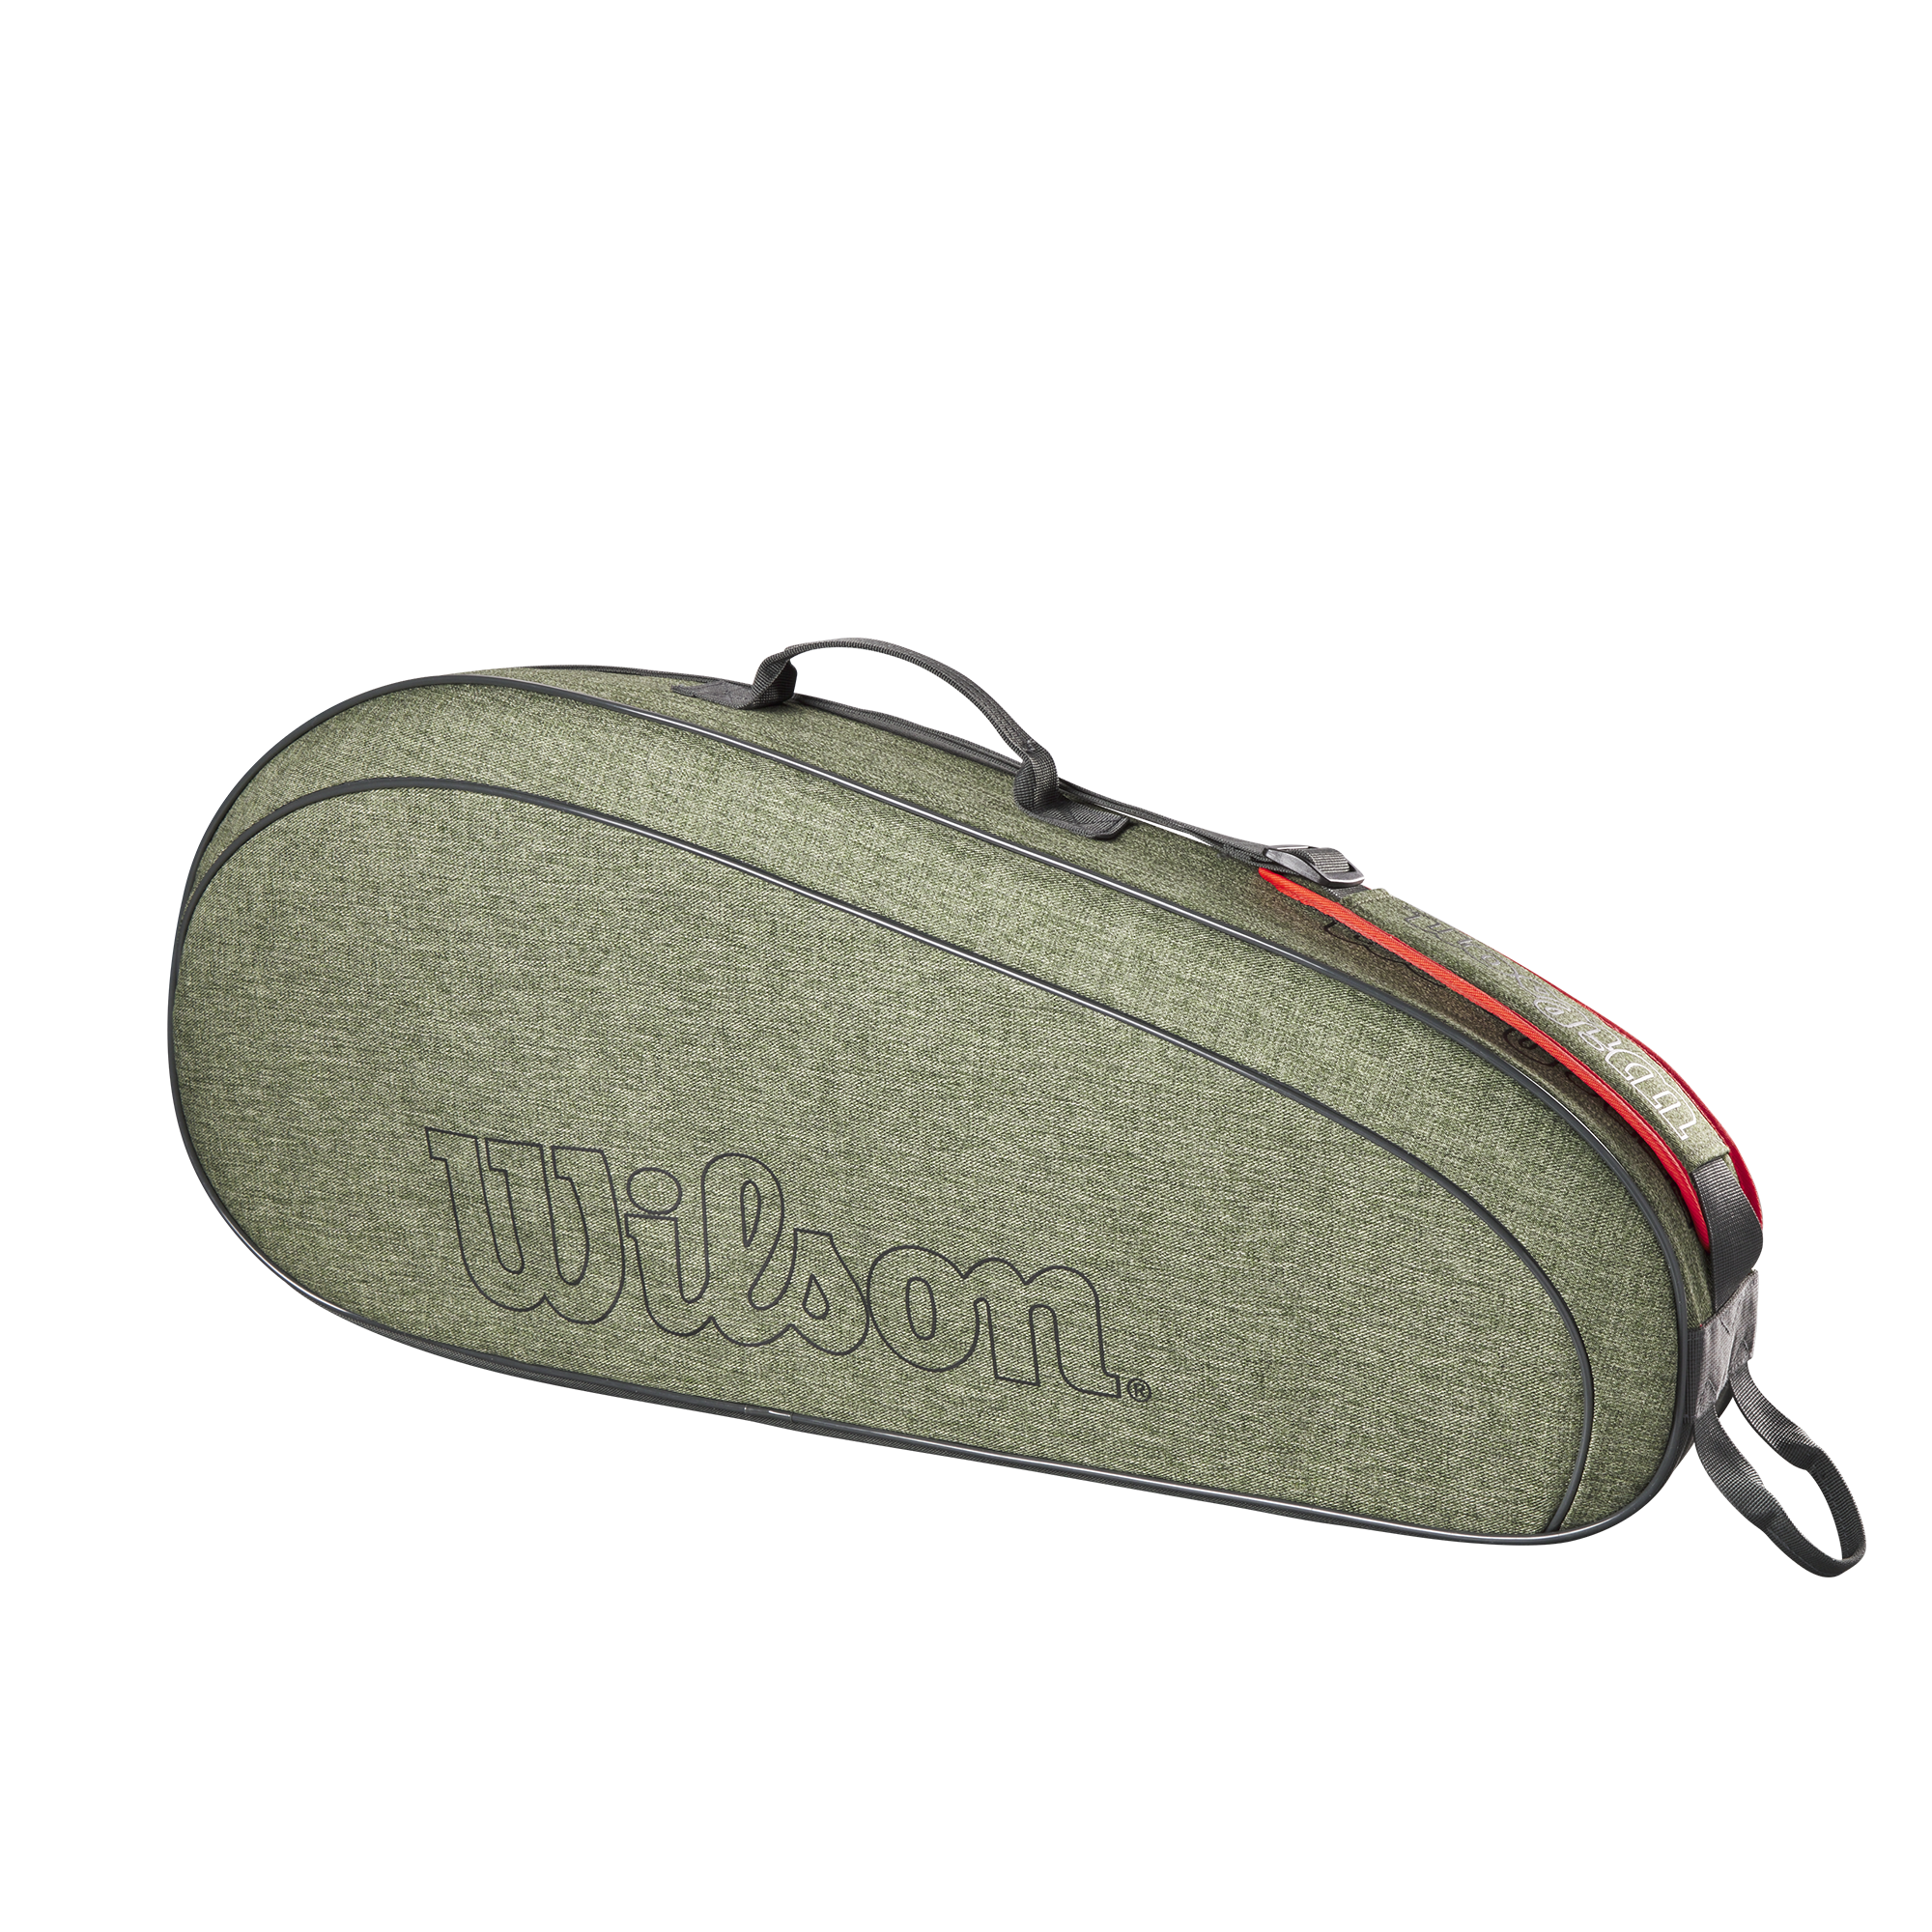 Wilson Team 3-Pack Tennis Bag